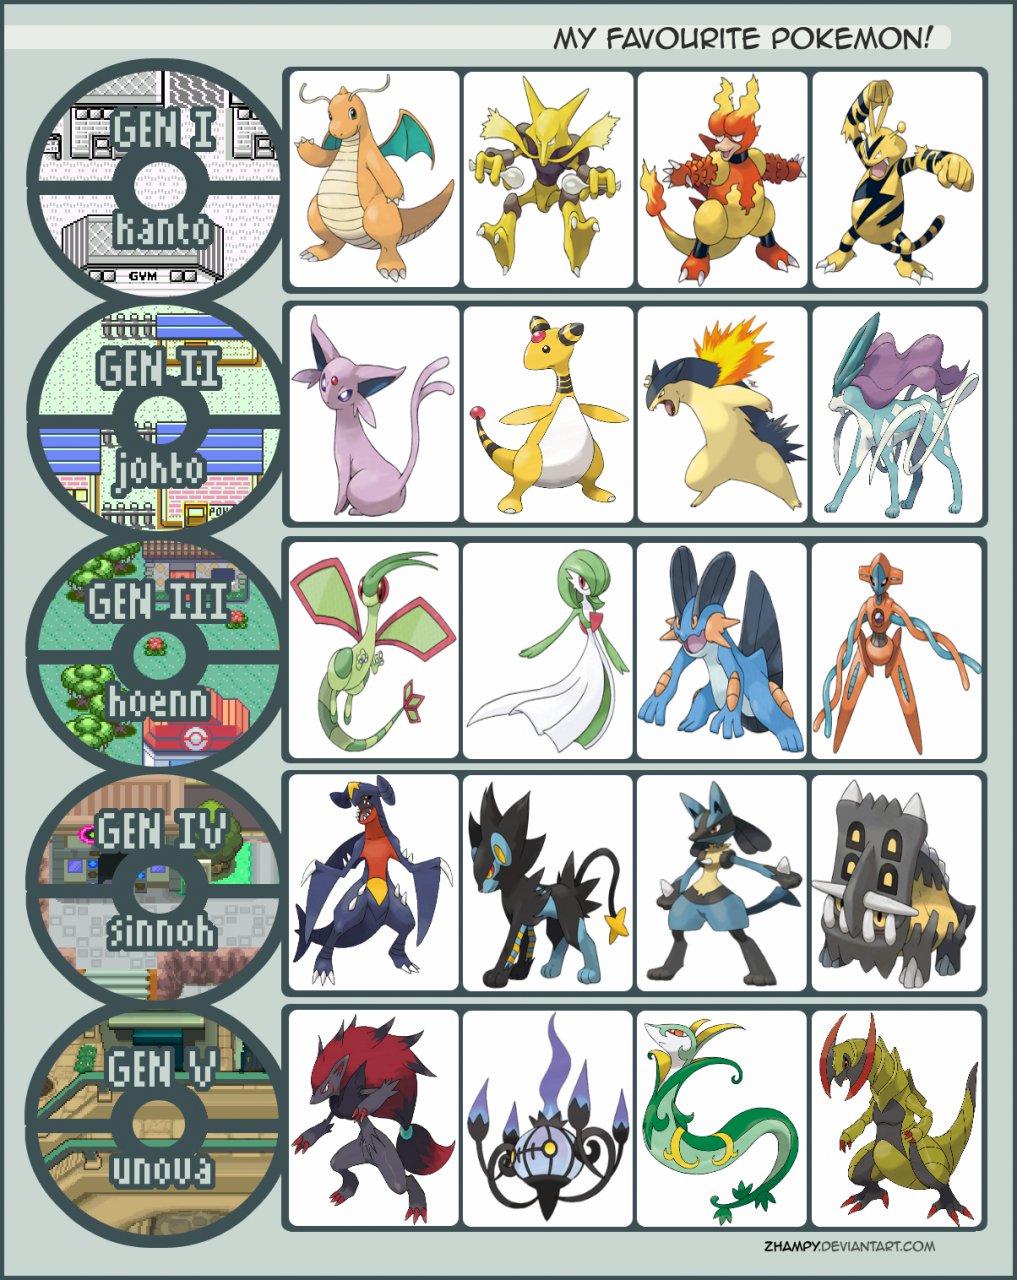 My favorite Pokémon for each type - Gen 2